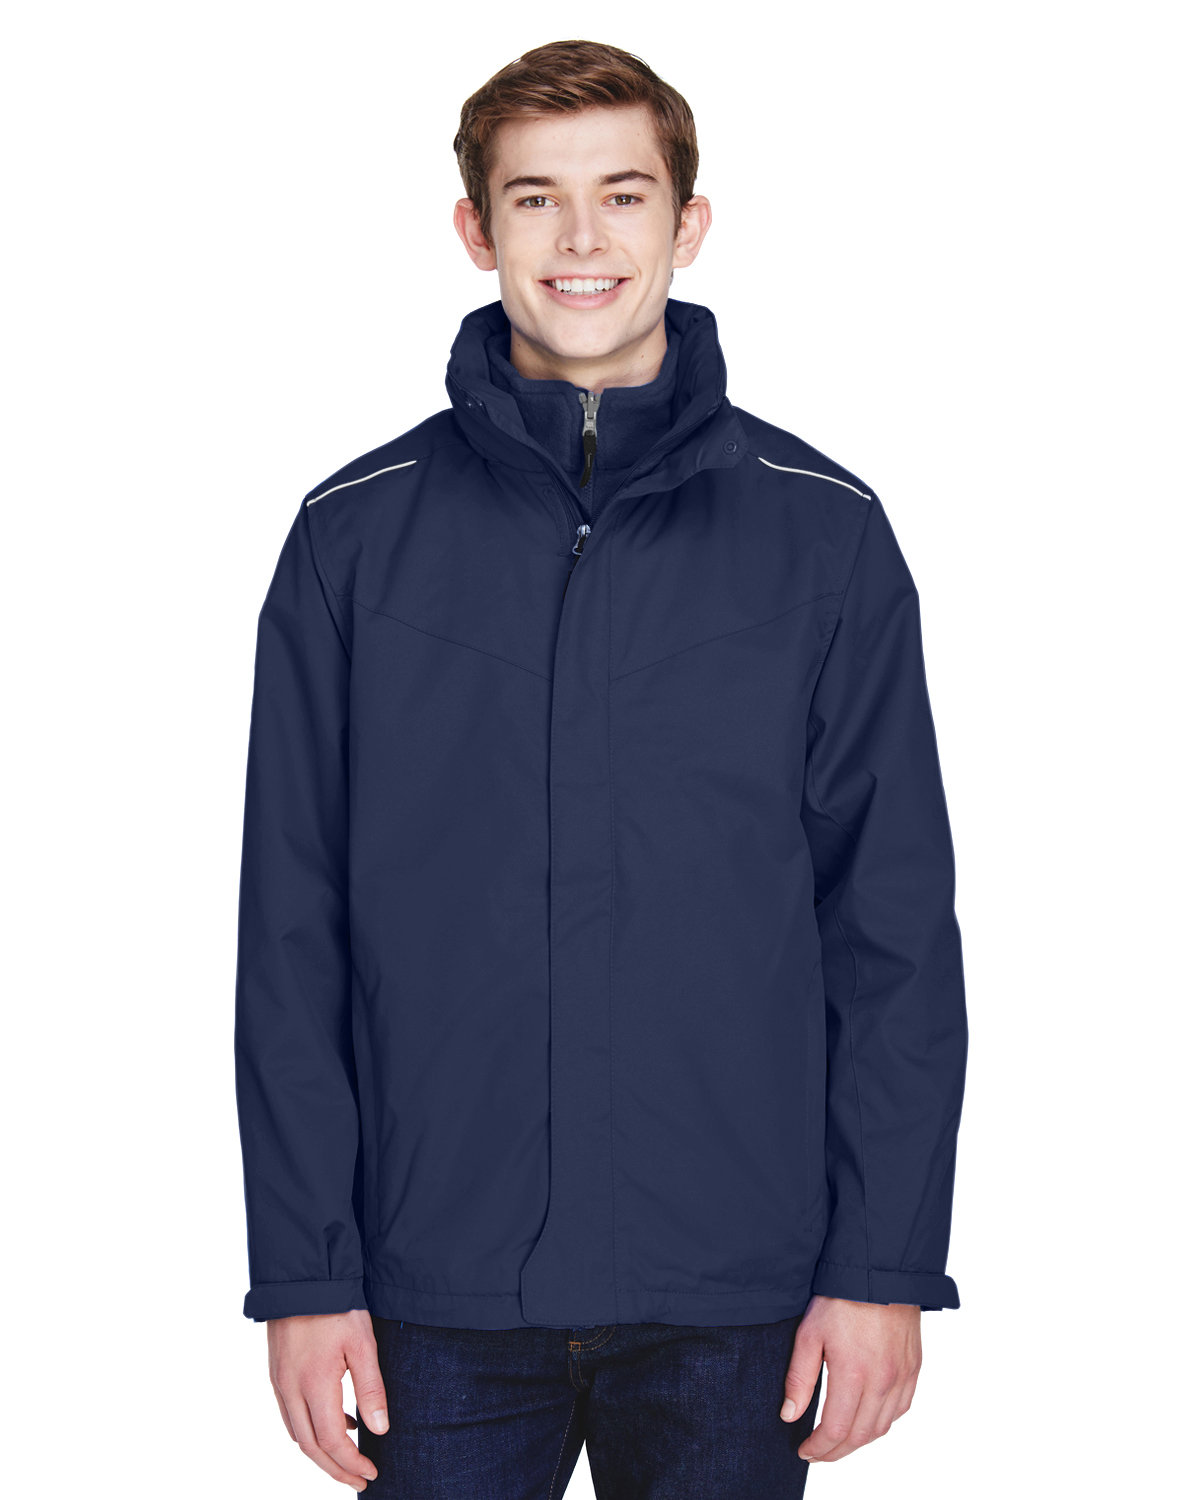 Core365 Men's Region 3-in-1 Jacket with Fleece Liner CLASSIC NAVY 